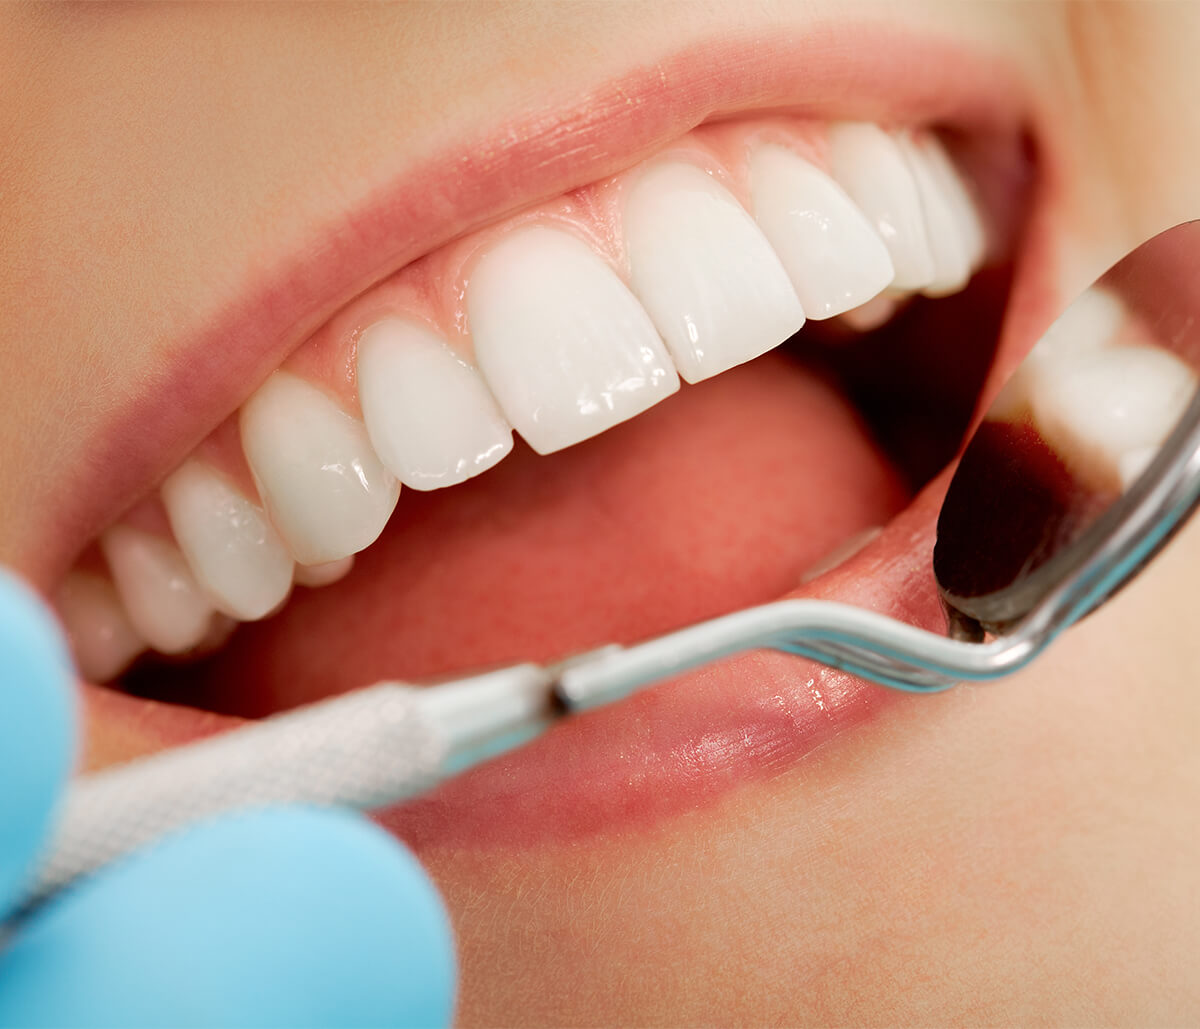 Advantages of Dental Veneers Over Other Procedures